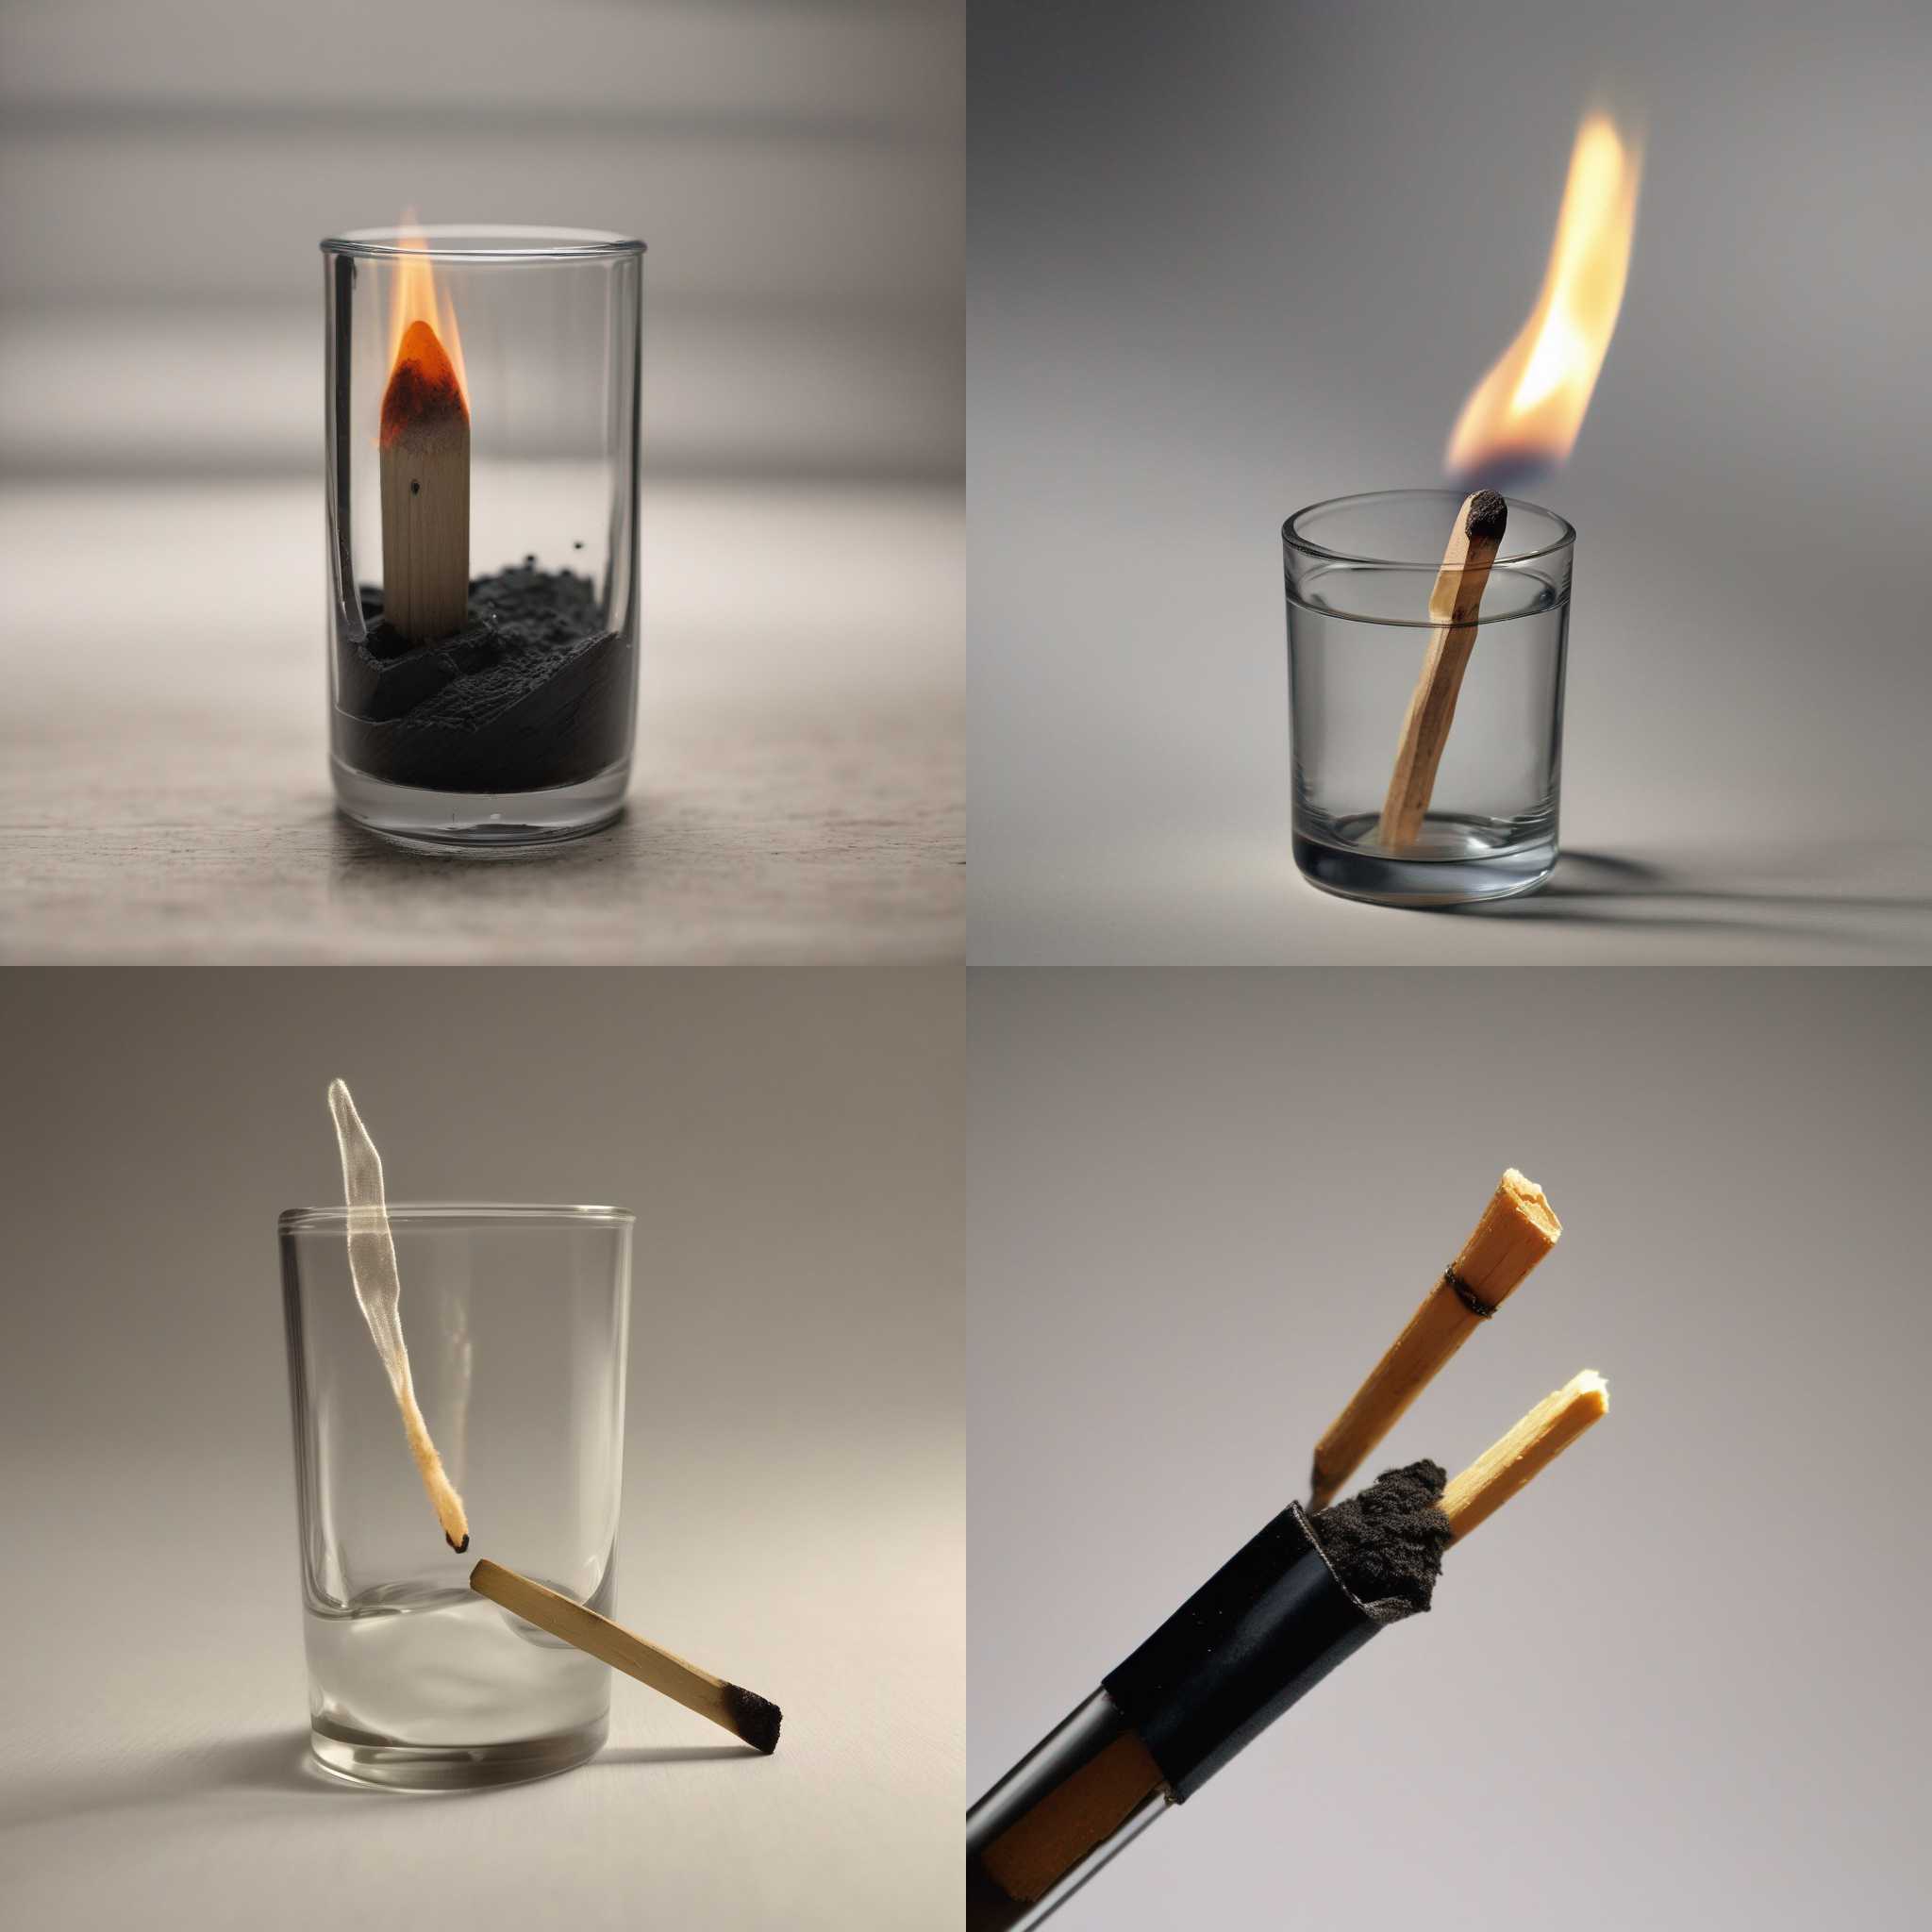 A matchstick struck against a glass